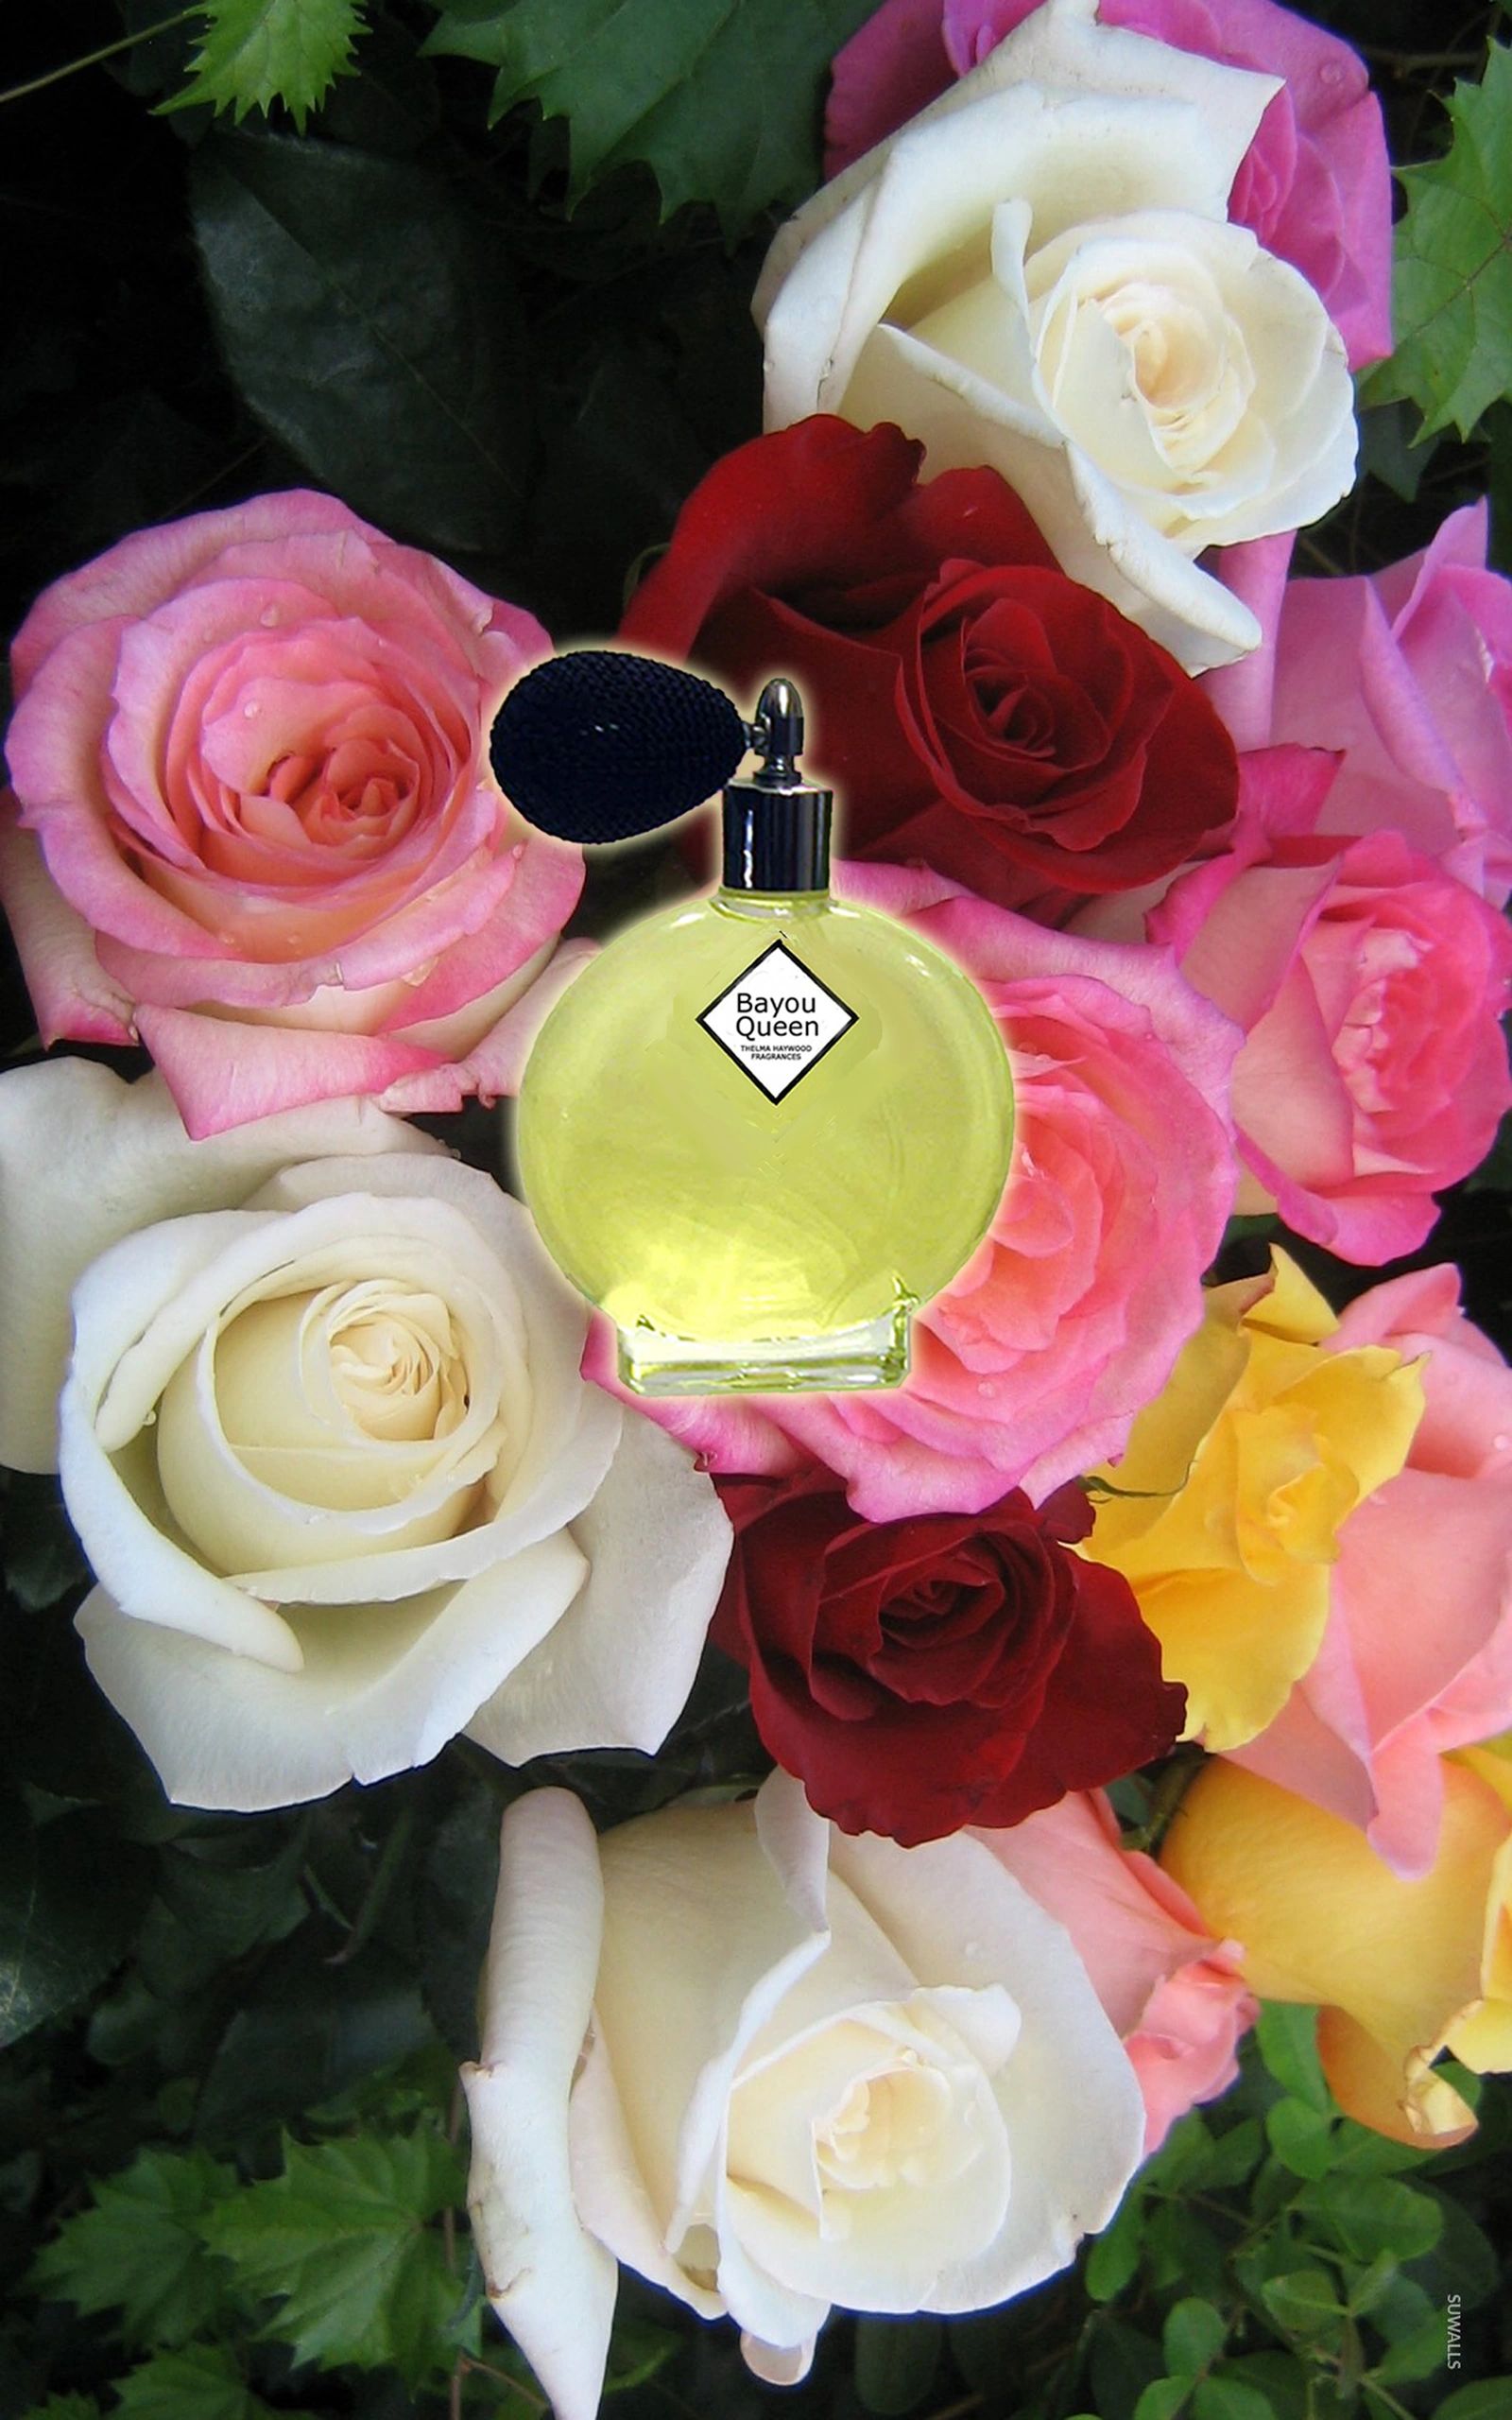 Bayou Queen Perfume